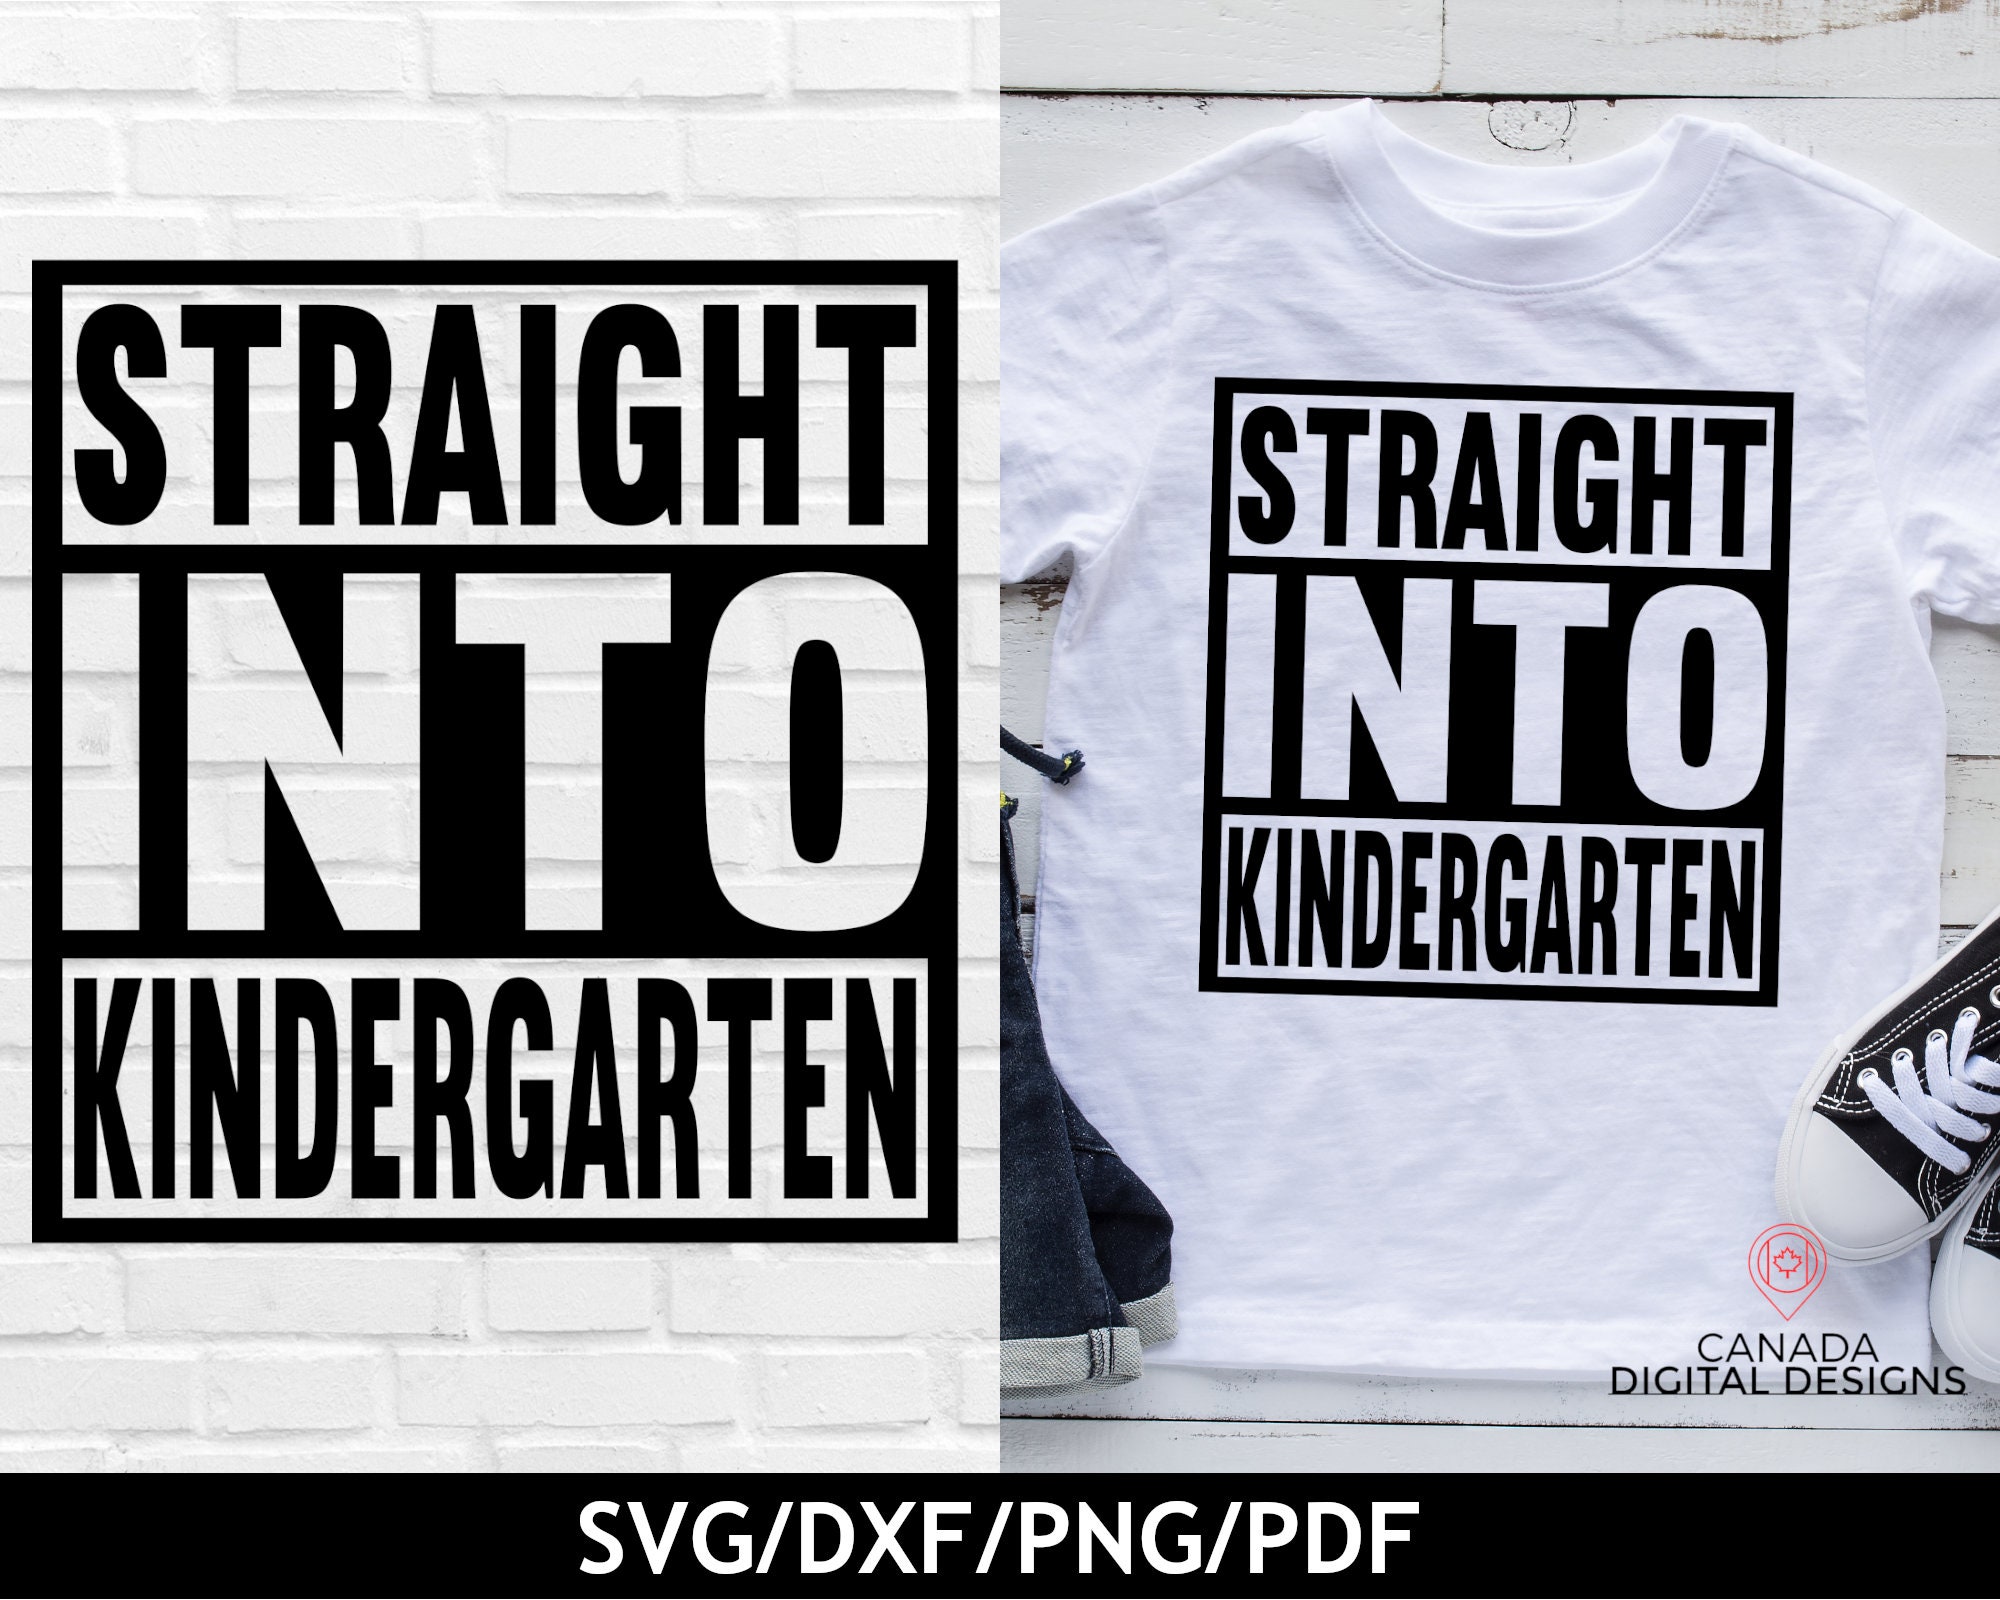 Kindergarten Shirt for Boys - Etsy